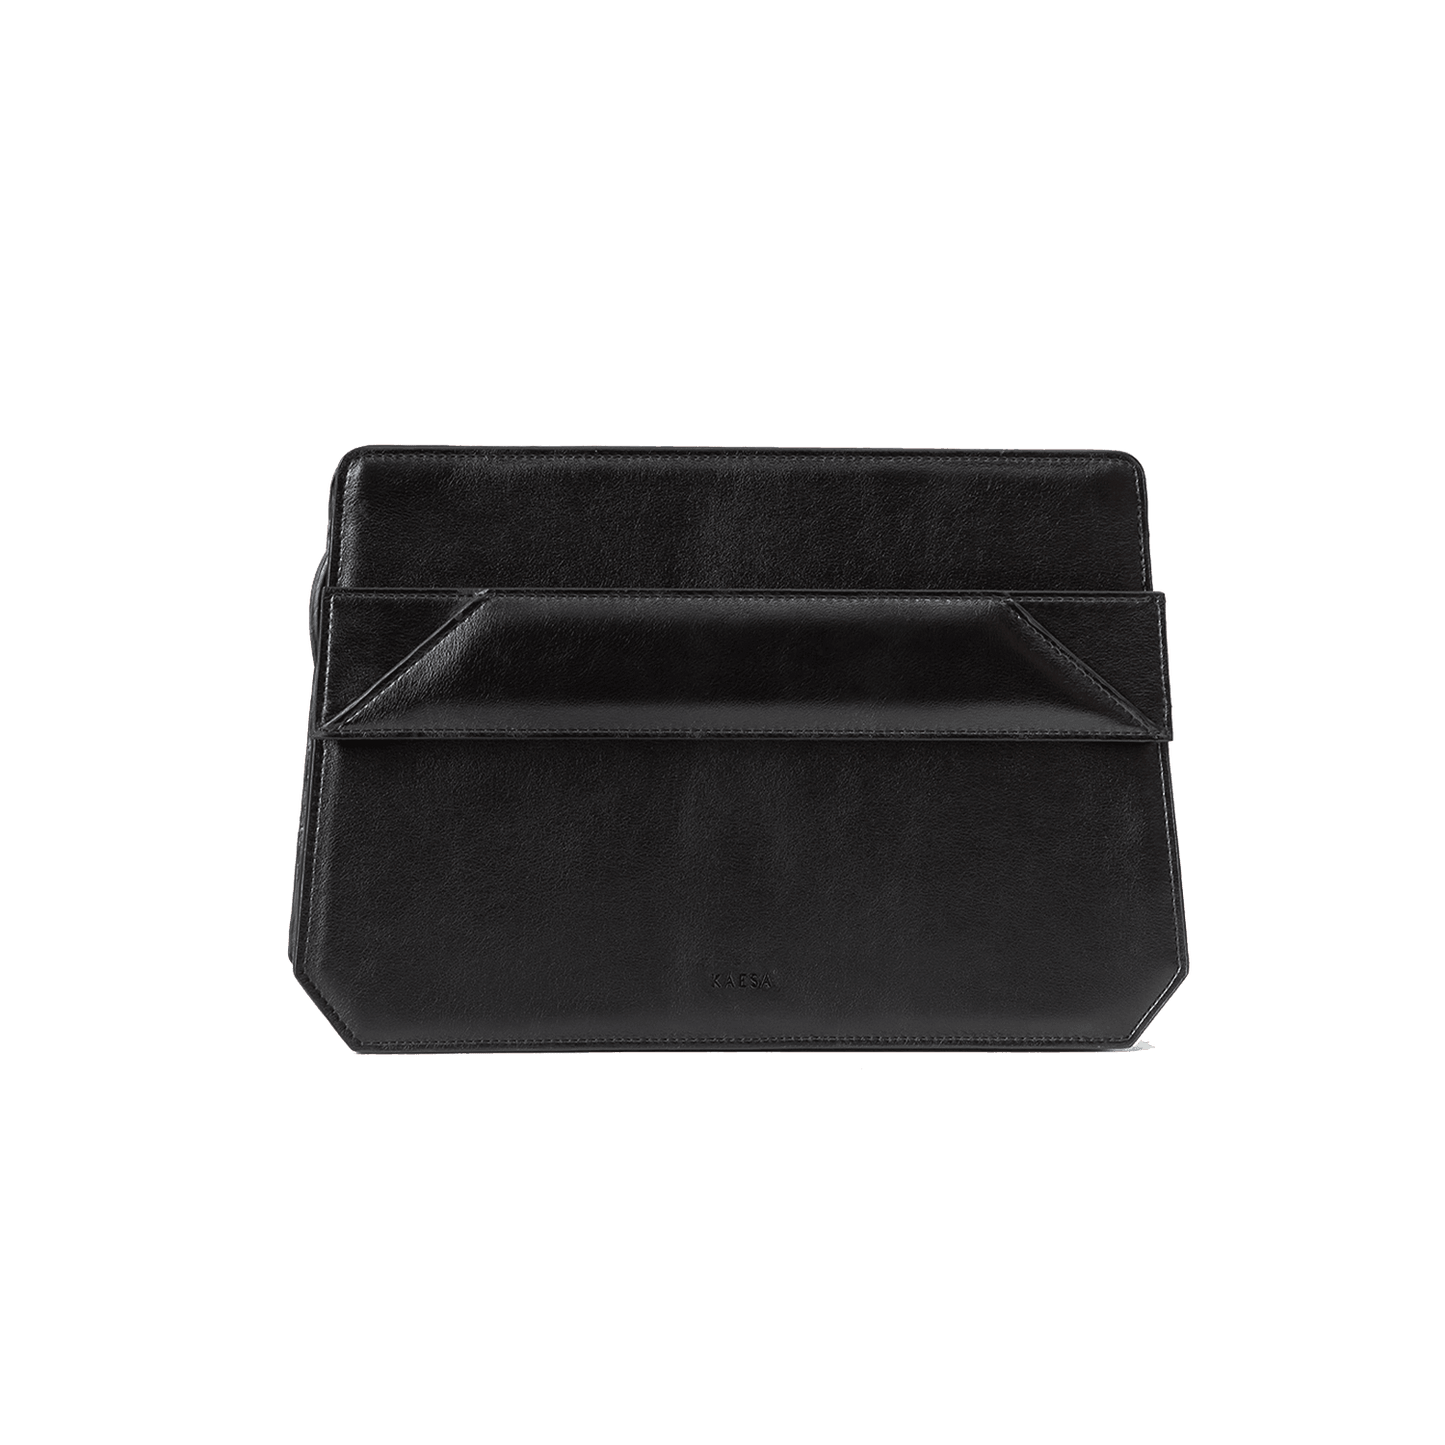 VLLR Box Bag (Classic Black)